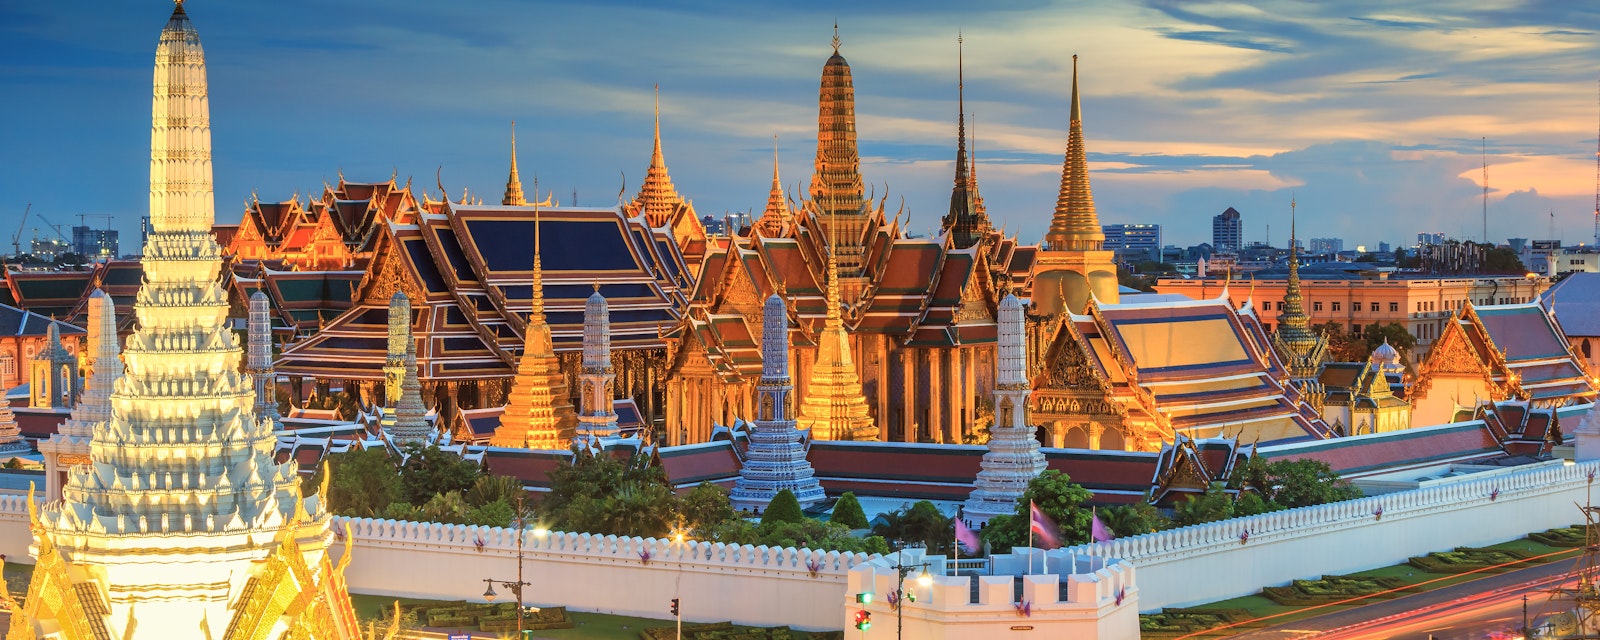 Grand,Palace,And,Wat,Phra,Keaw,At,Sunset,Bangkok,,Thailand.